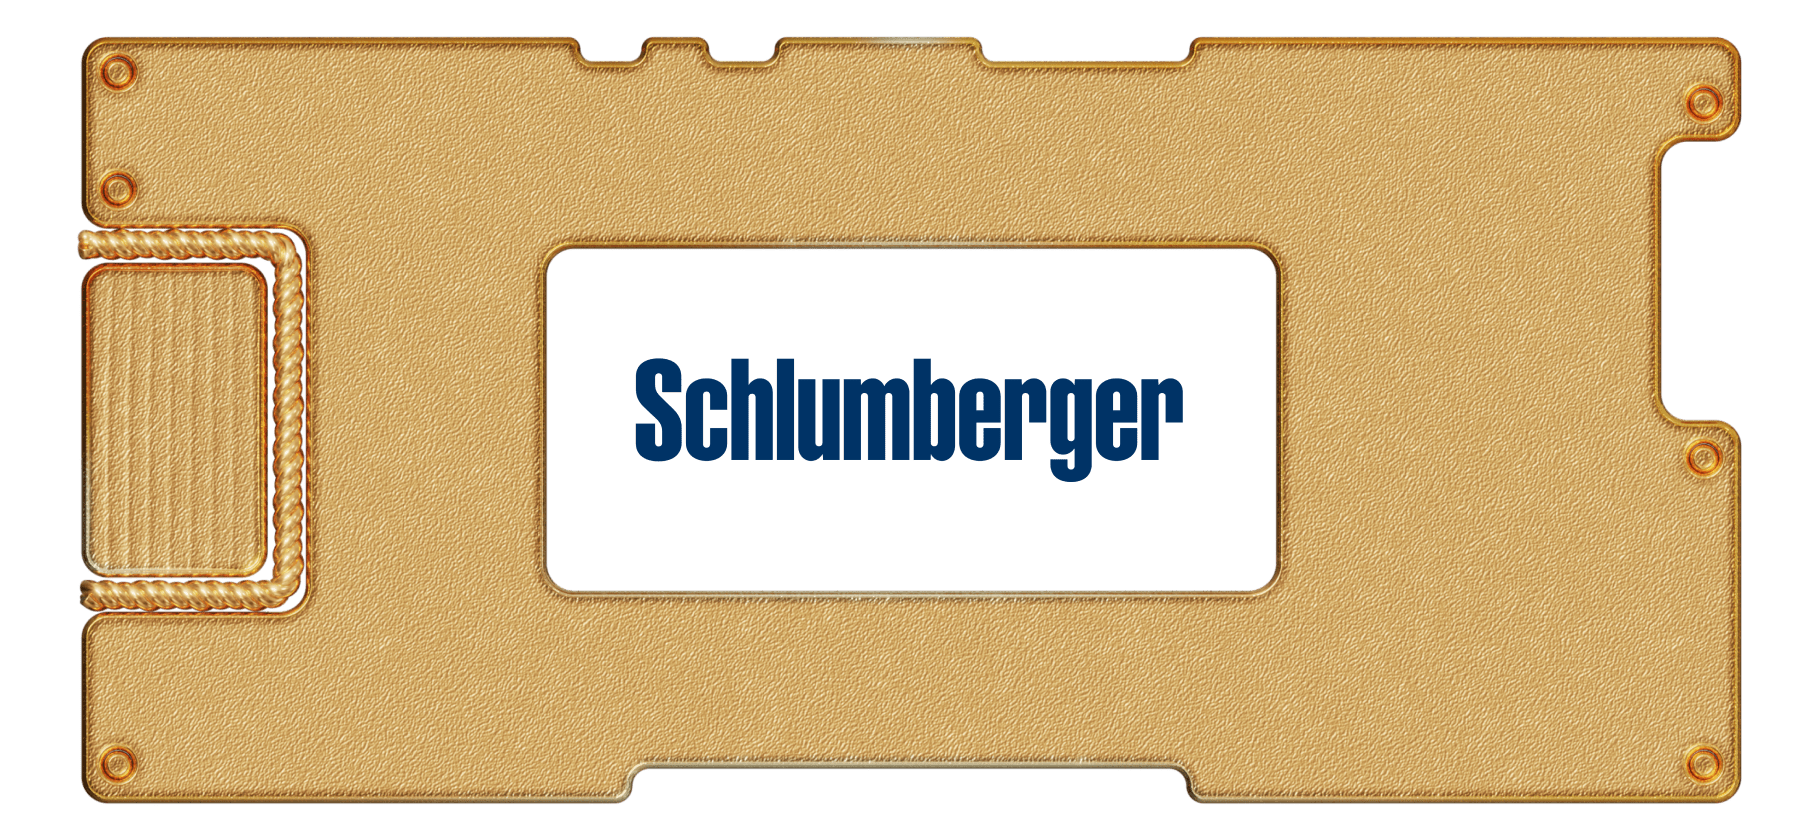 Инвестидея: Schlumberger, потому что время качать